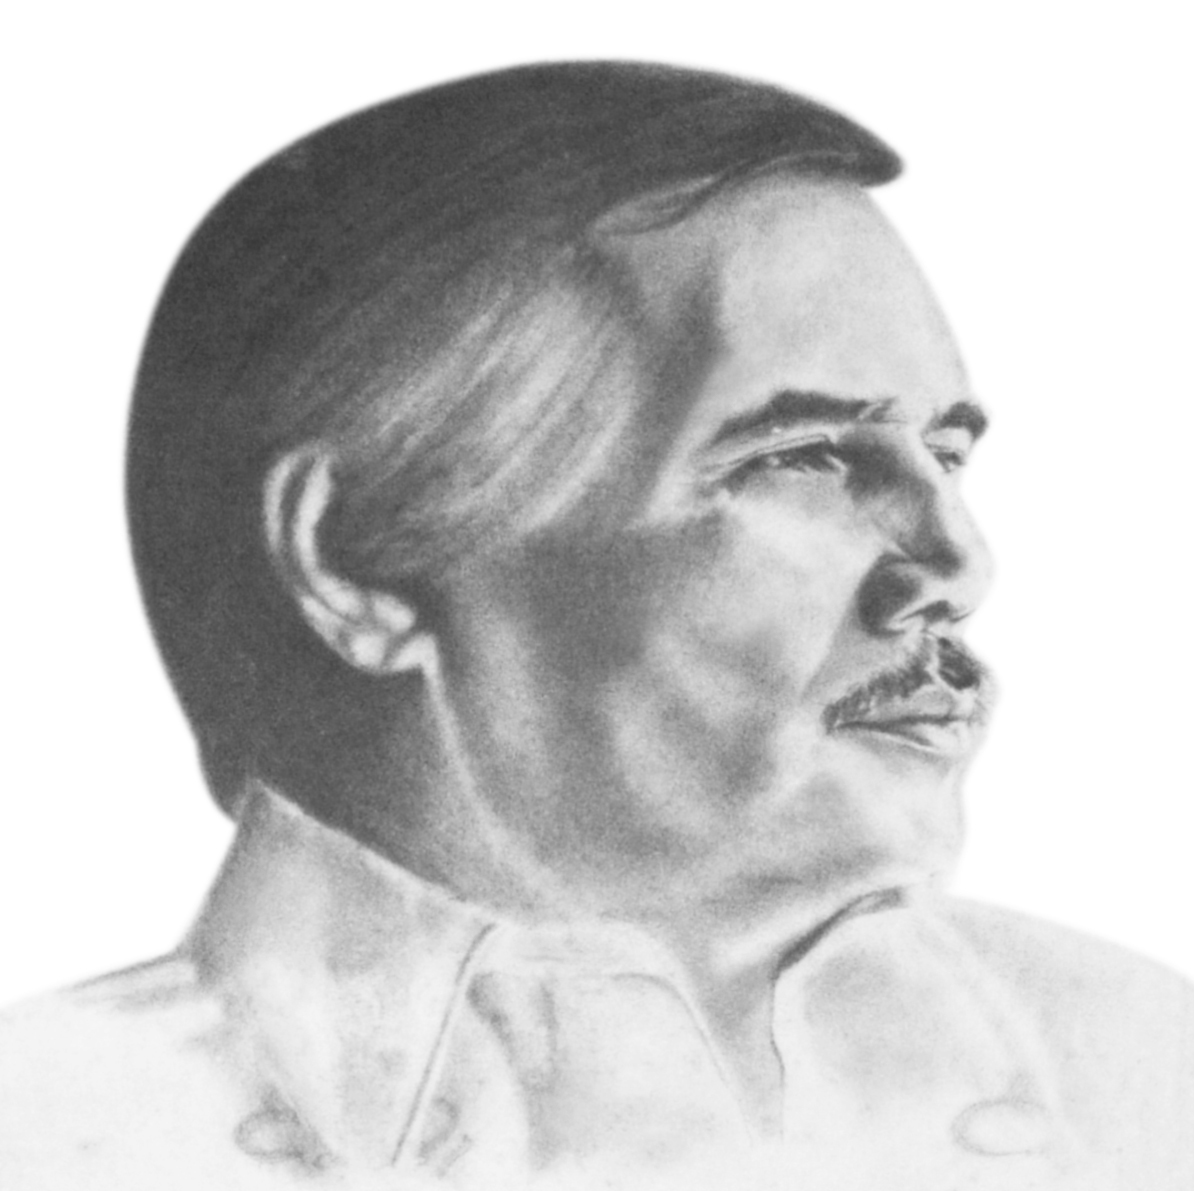 Salvador E. Delmo